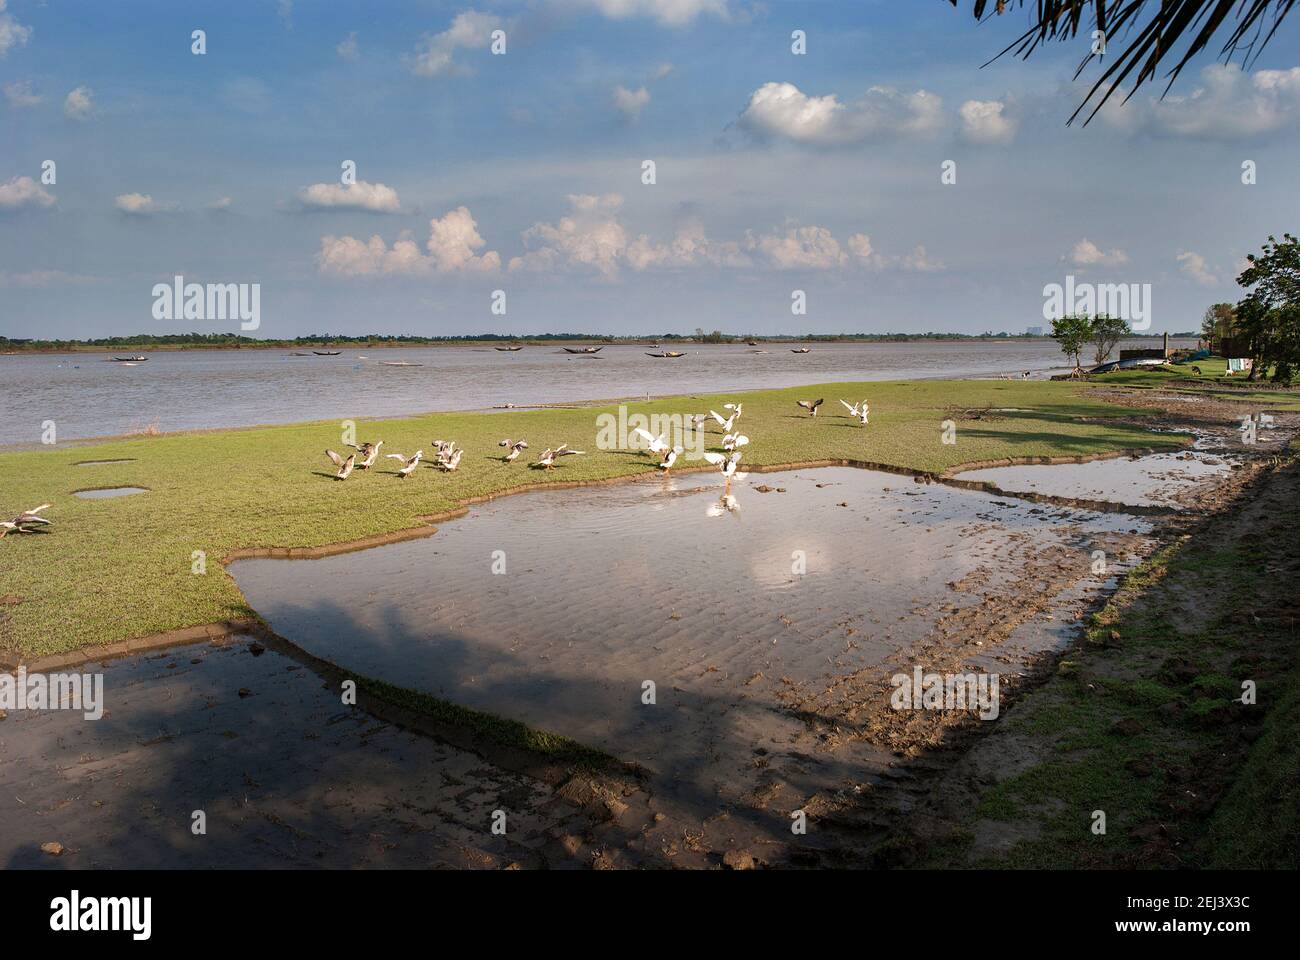 Swans on the bank of Rupsha River at Khulna, Bangladesh Stock Photo